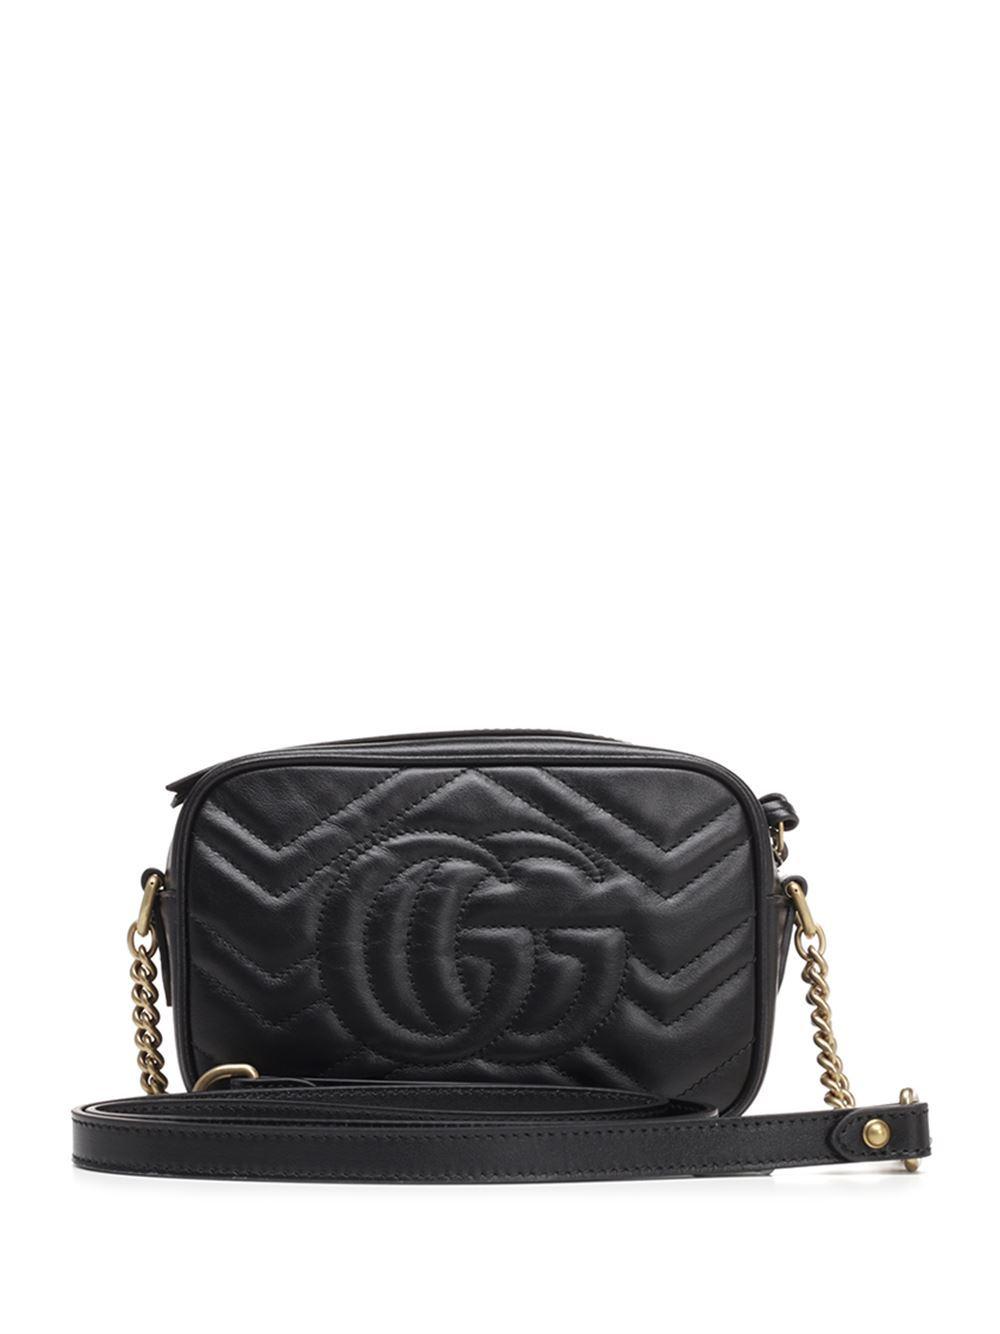 Gucci Leather Gg Marmont Matelassã© Shoulder Bag in Nero/Nero (Black ...